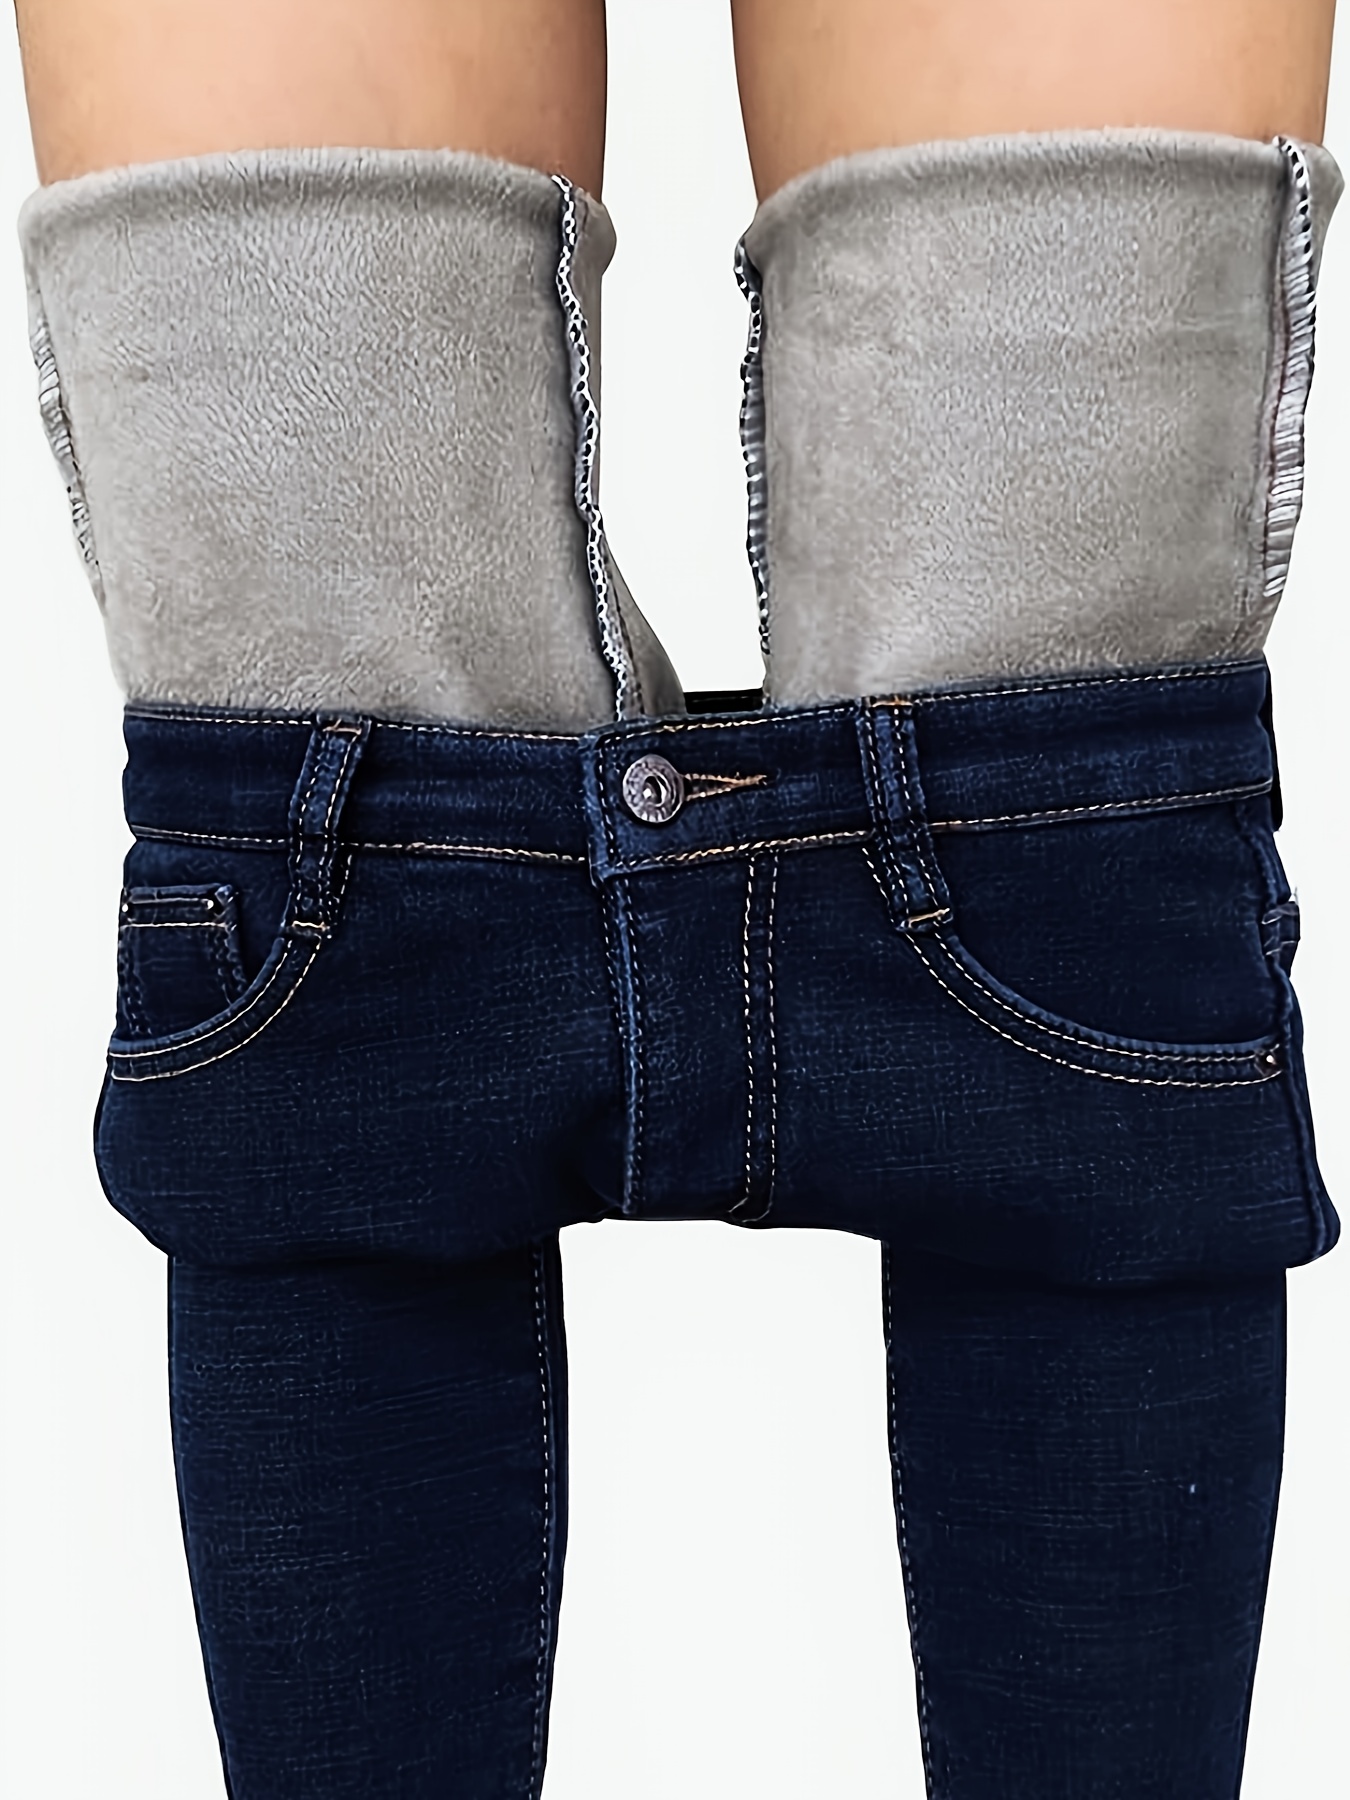 Thermal Fleece Denim Jeggings Super Comfy Stretch Denim Skinny Jeans For  Women